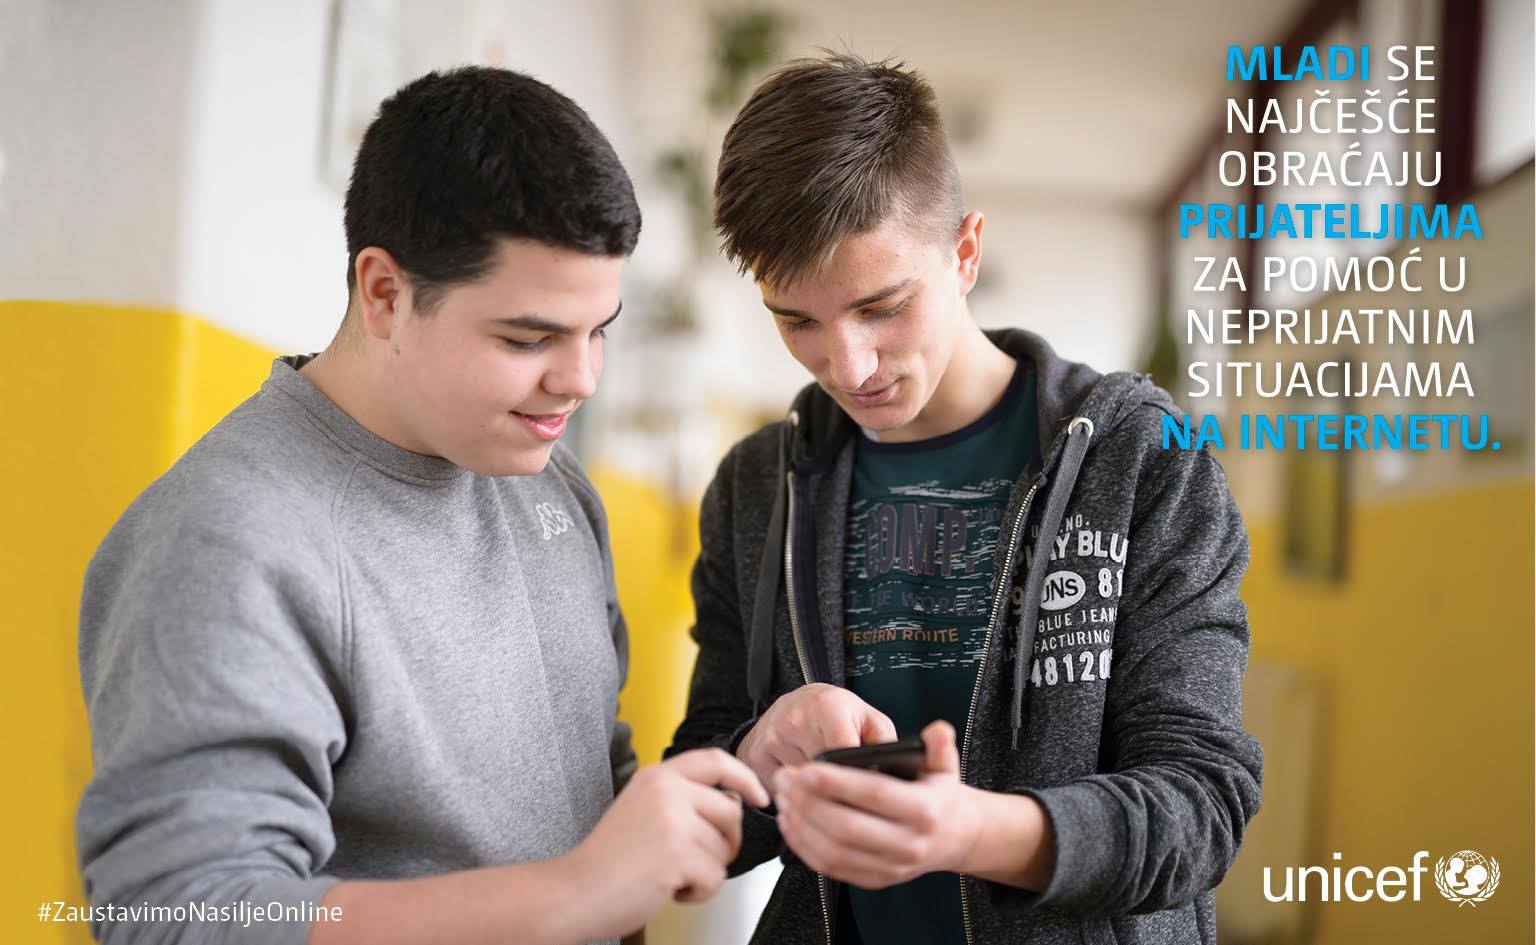 Mladi se najčešće obraćaju prijateljima za pomoć u neprijatnim situacijama na internetu